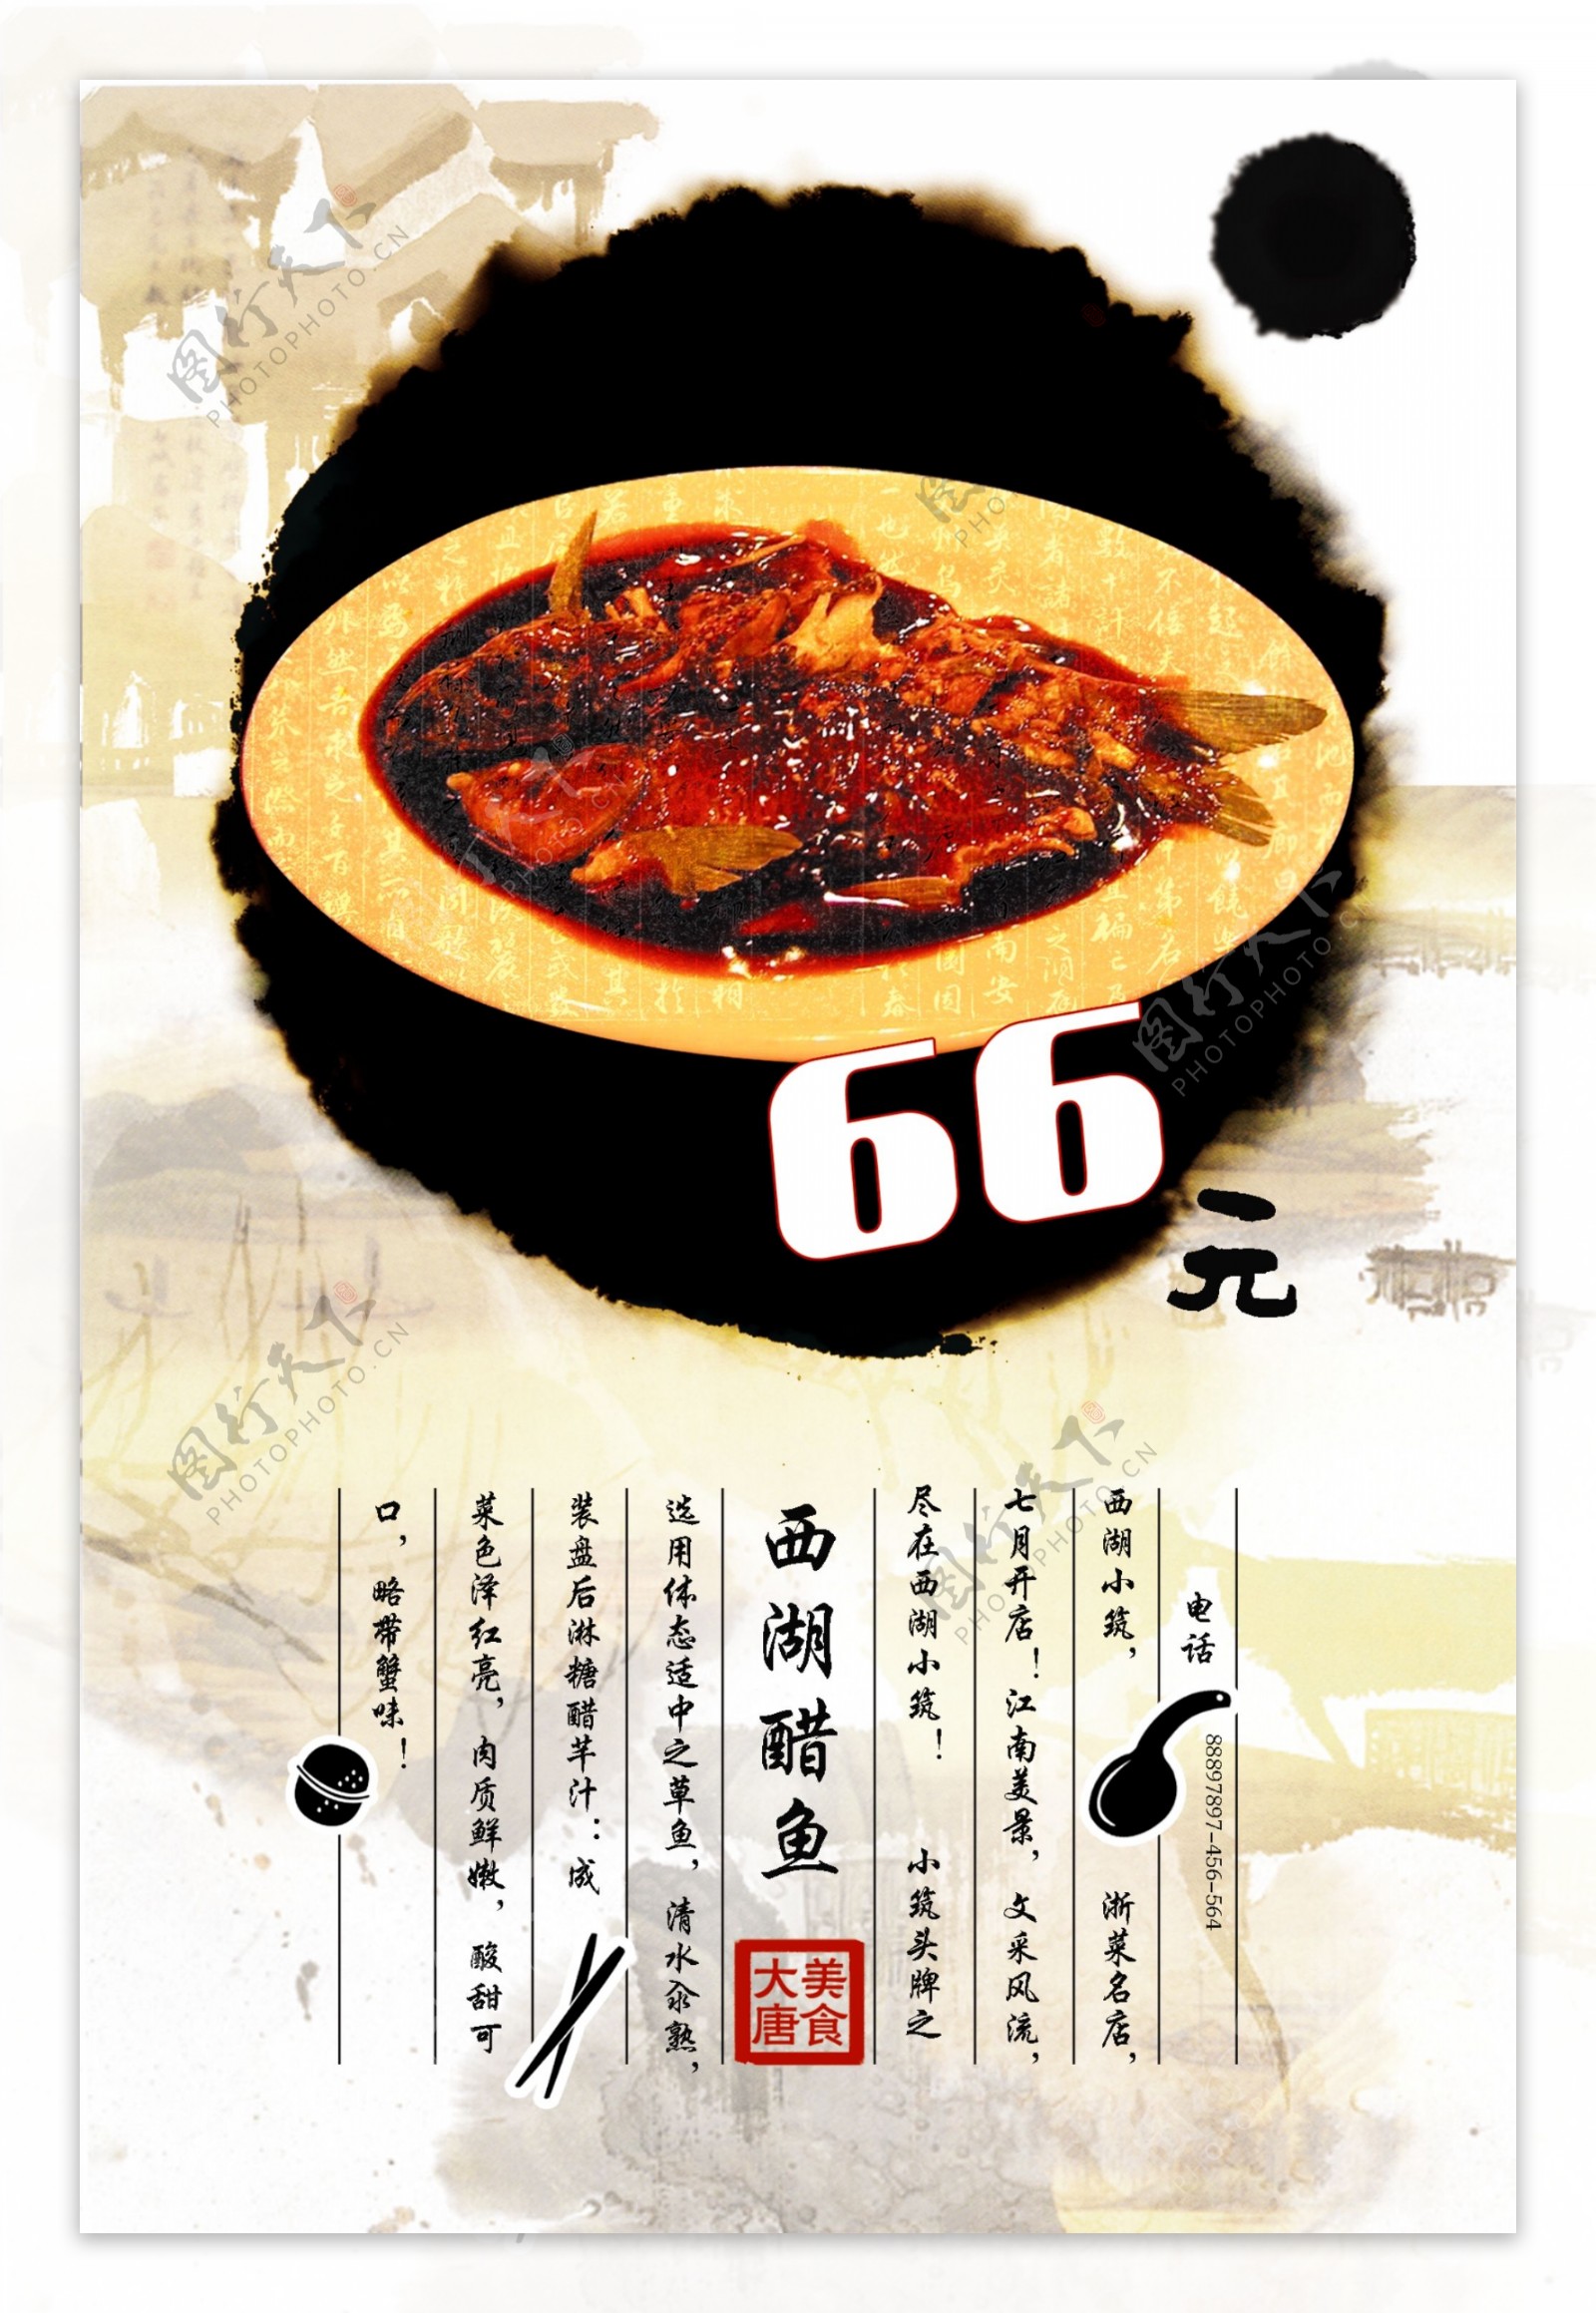 创意中国风菜谱菜单